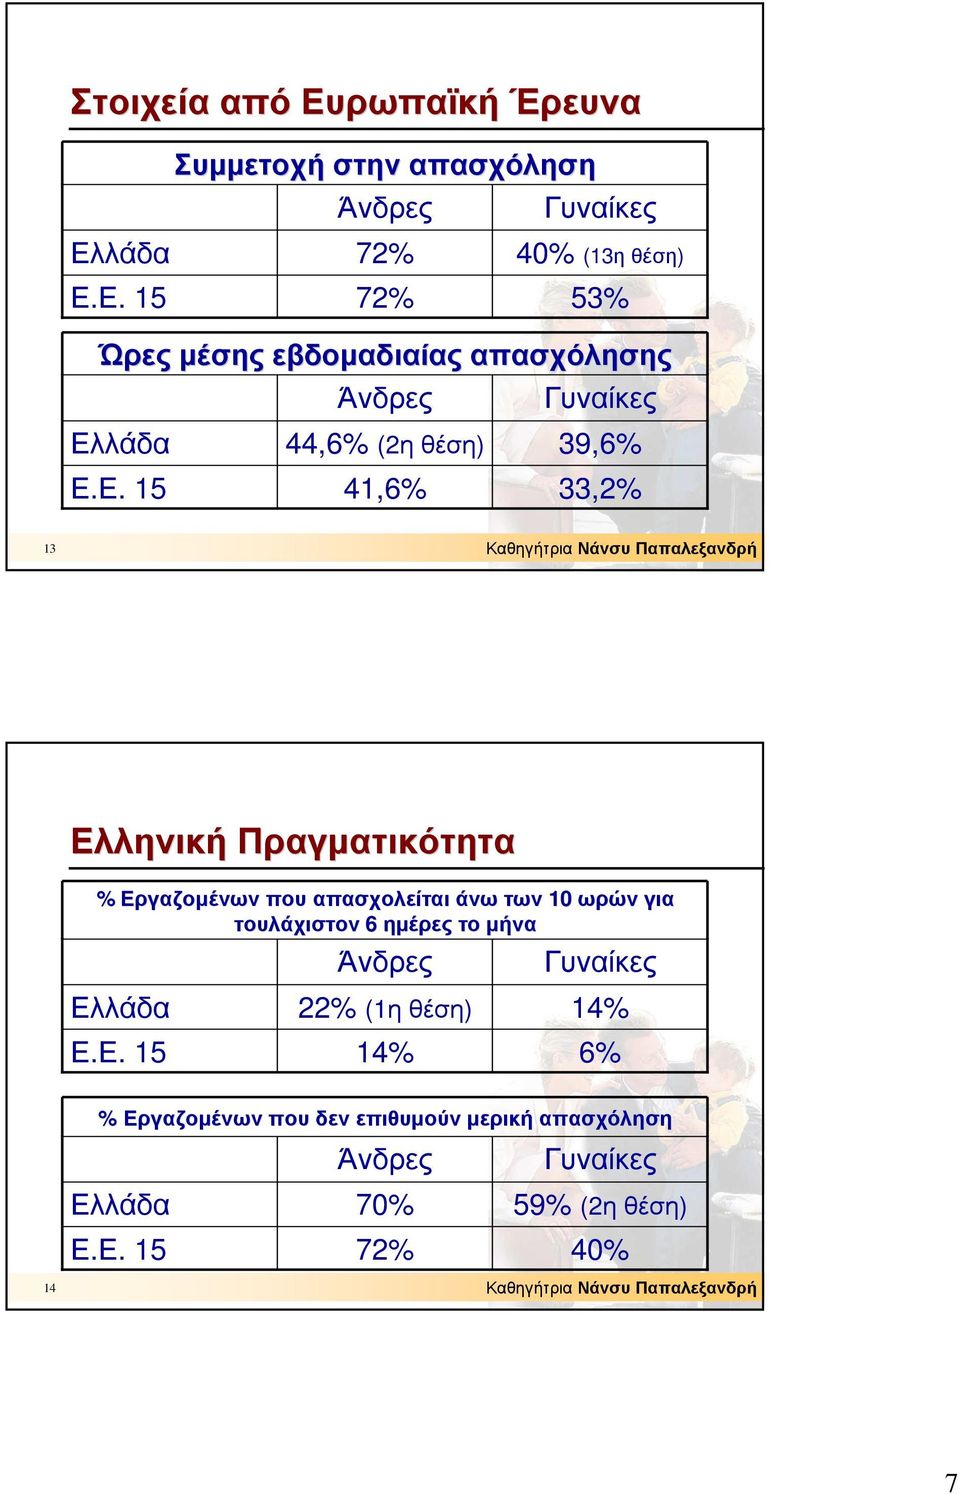 Πραγµατικότητα % Εργαζοµένων που απασχολείται άνω των 10 ωρών για τουλάχιστον 6 ηµέρες το µήνα Ελλάδα Άνδρες 22%